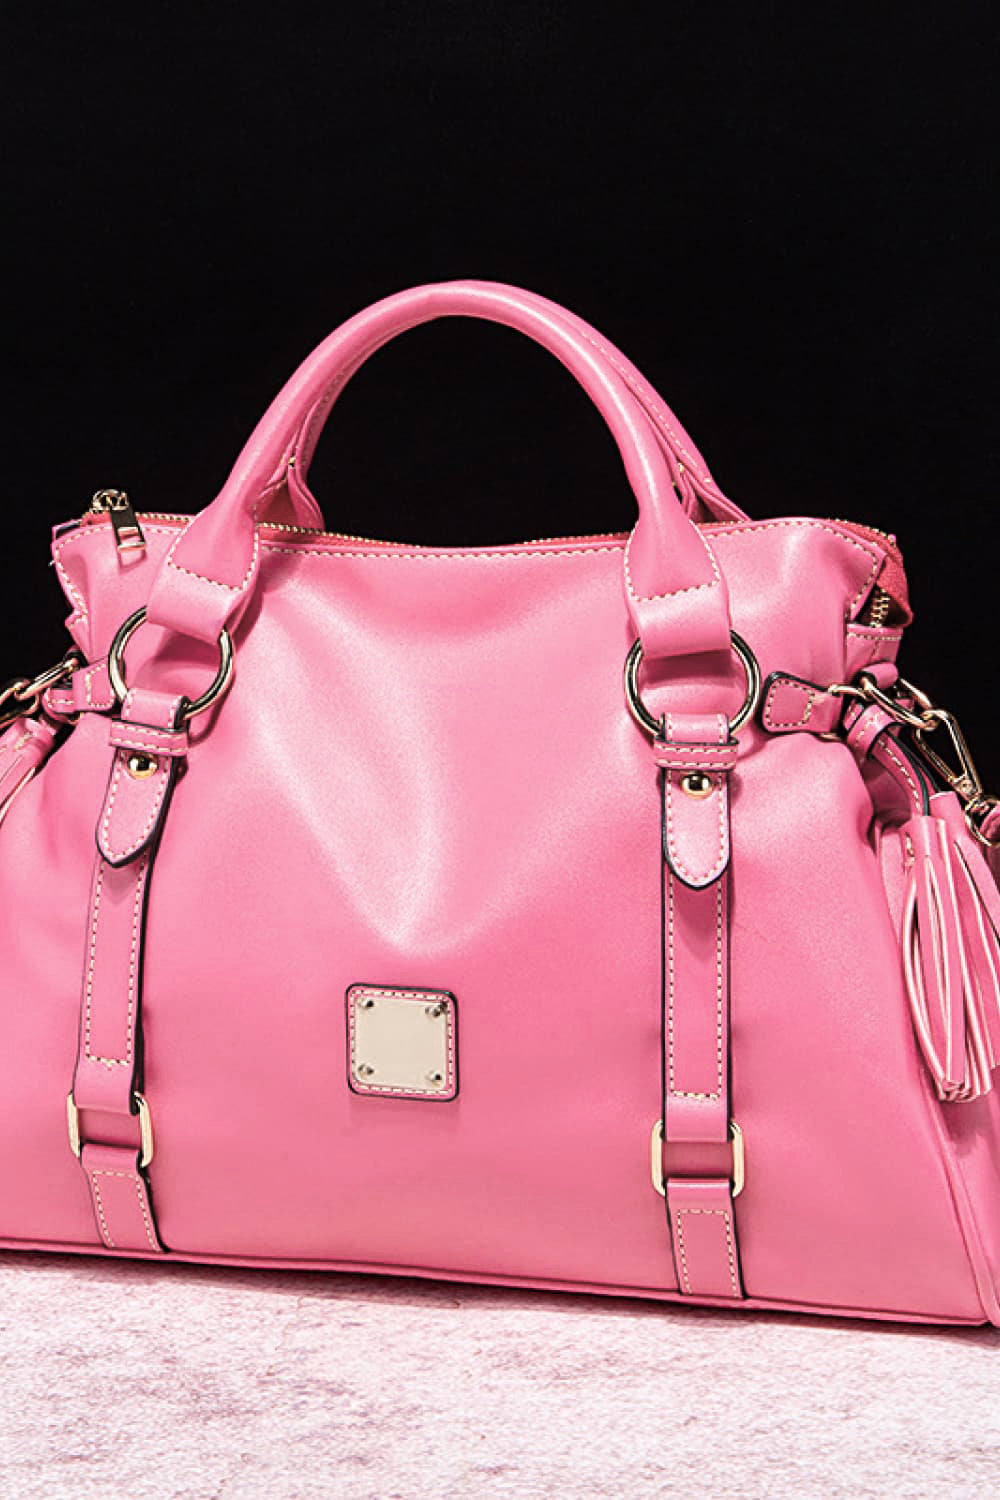 PU Leather Handbag with Tassels - Thandynie